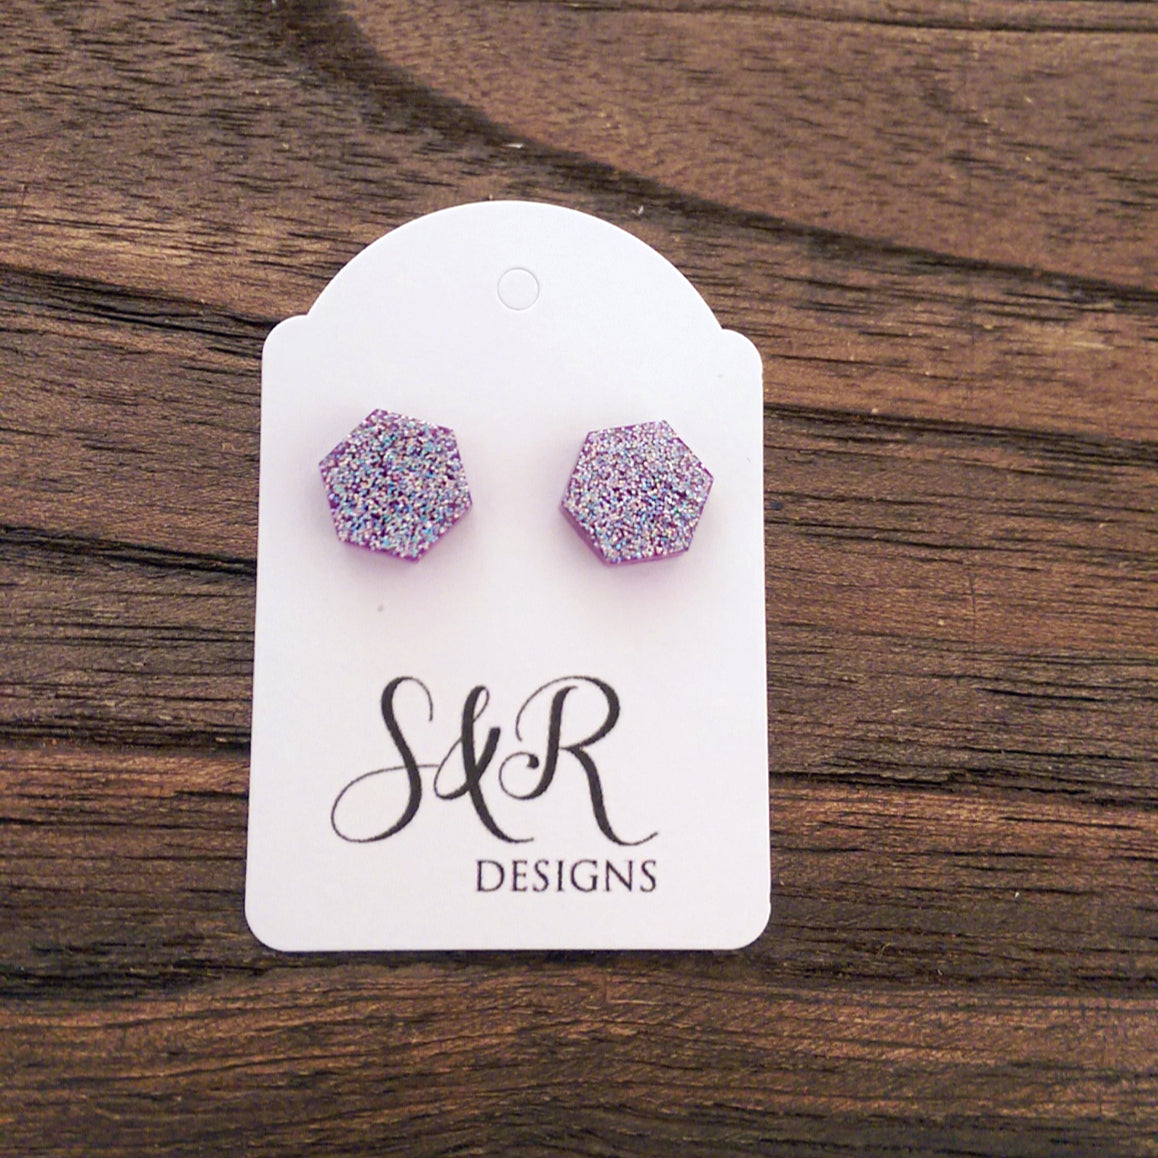 Hexagon Resin Stud Earrings, Purple Sparkly Earrings. Stainless Steel Stud Earrings. 10mm - Silver and Resin Designs